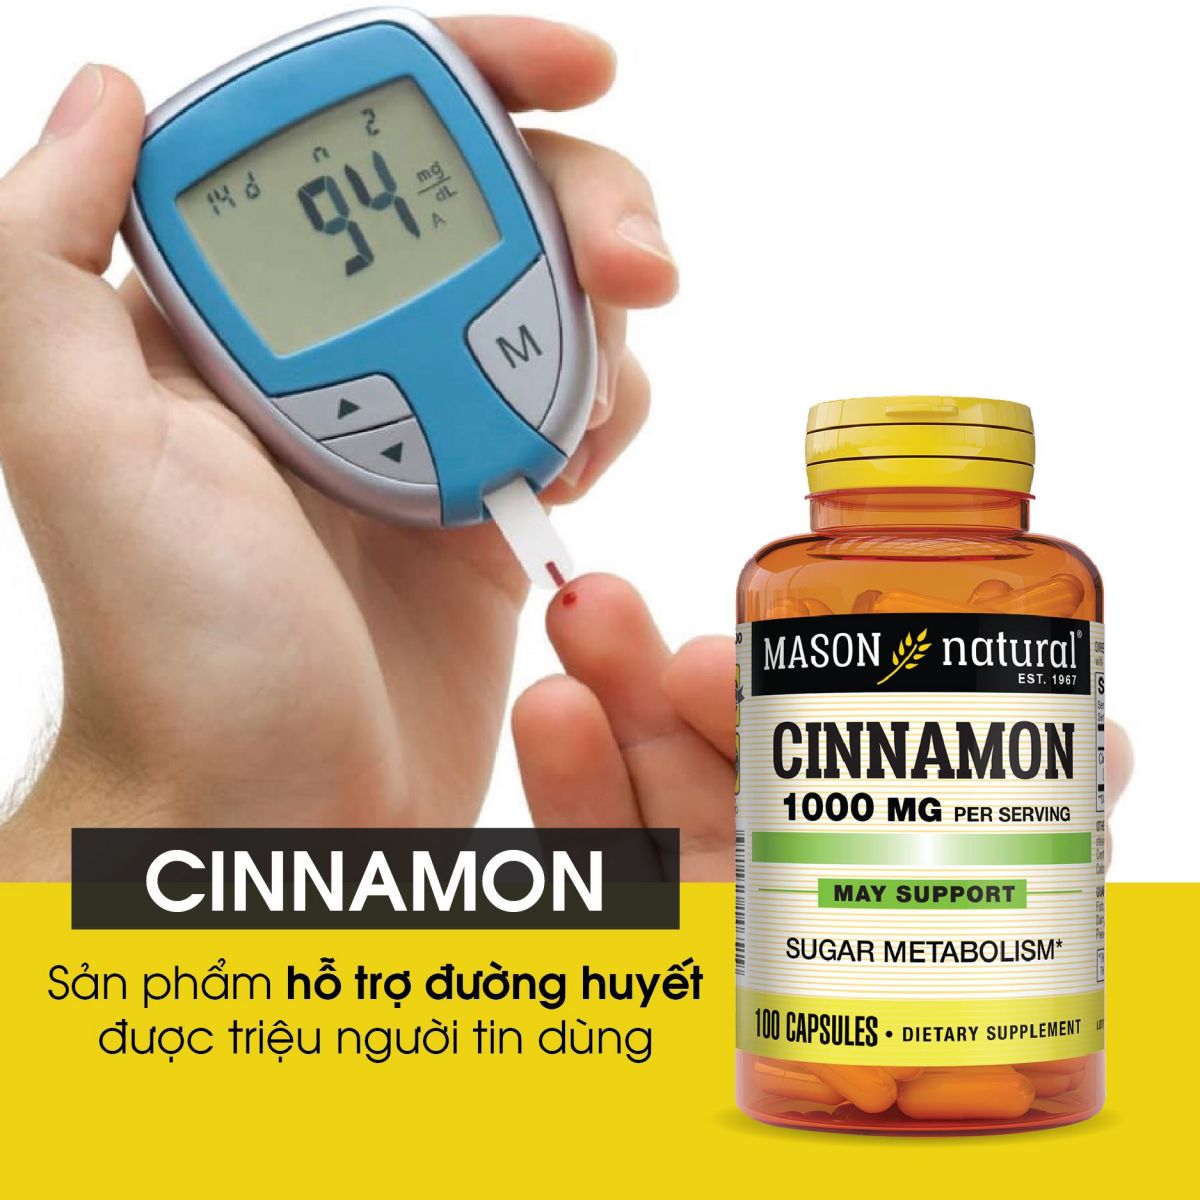 Mason Natural Cinnamon hỗ trợ chuyển hóa đường huyết